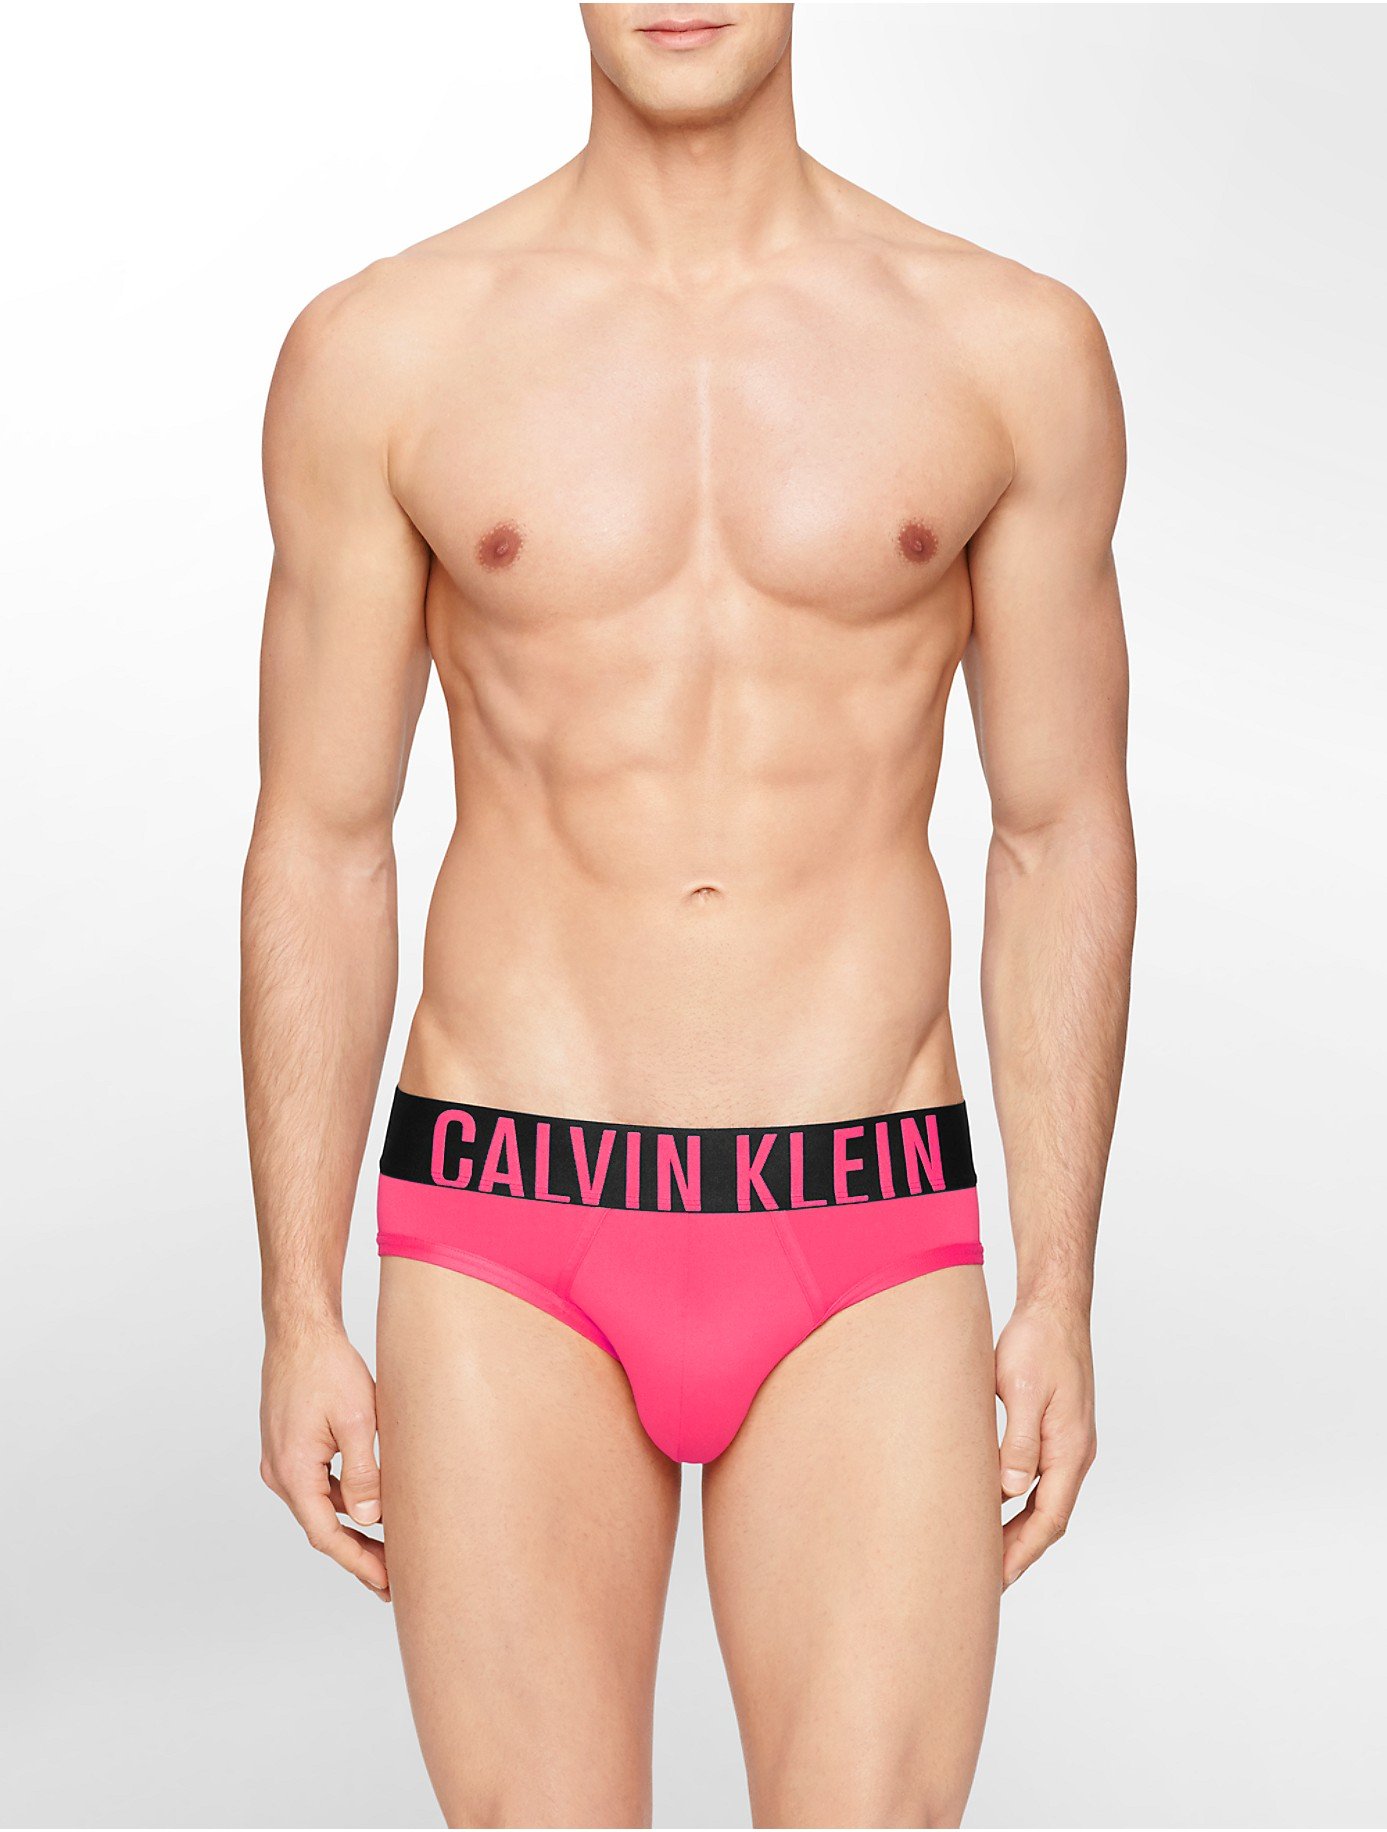 https://cdna.lystit.com/photos/1715-2015/04/30/calvin-klein-pink-underwear-intense-power-micro-hip-brief-product-0-303693042-normal.jpeg